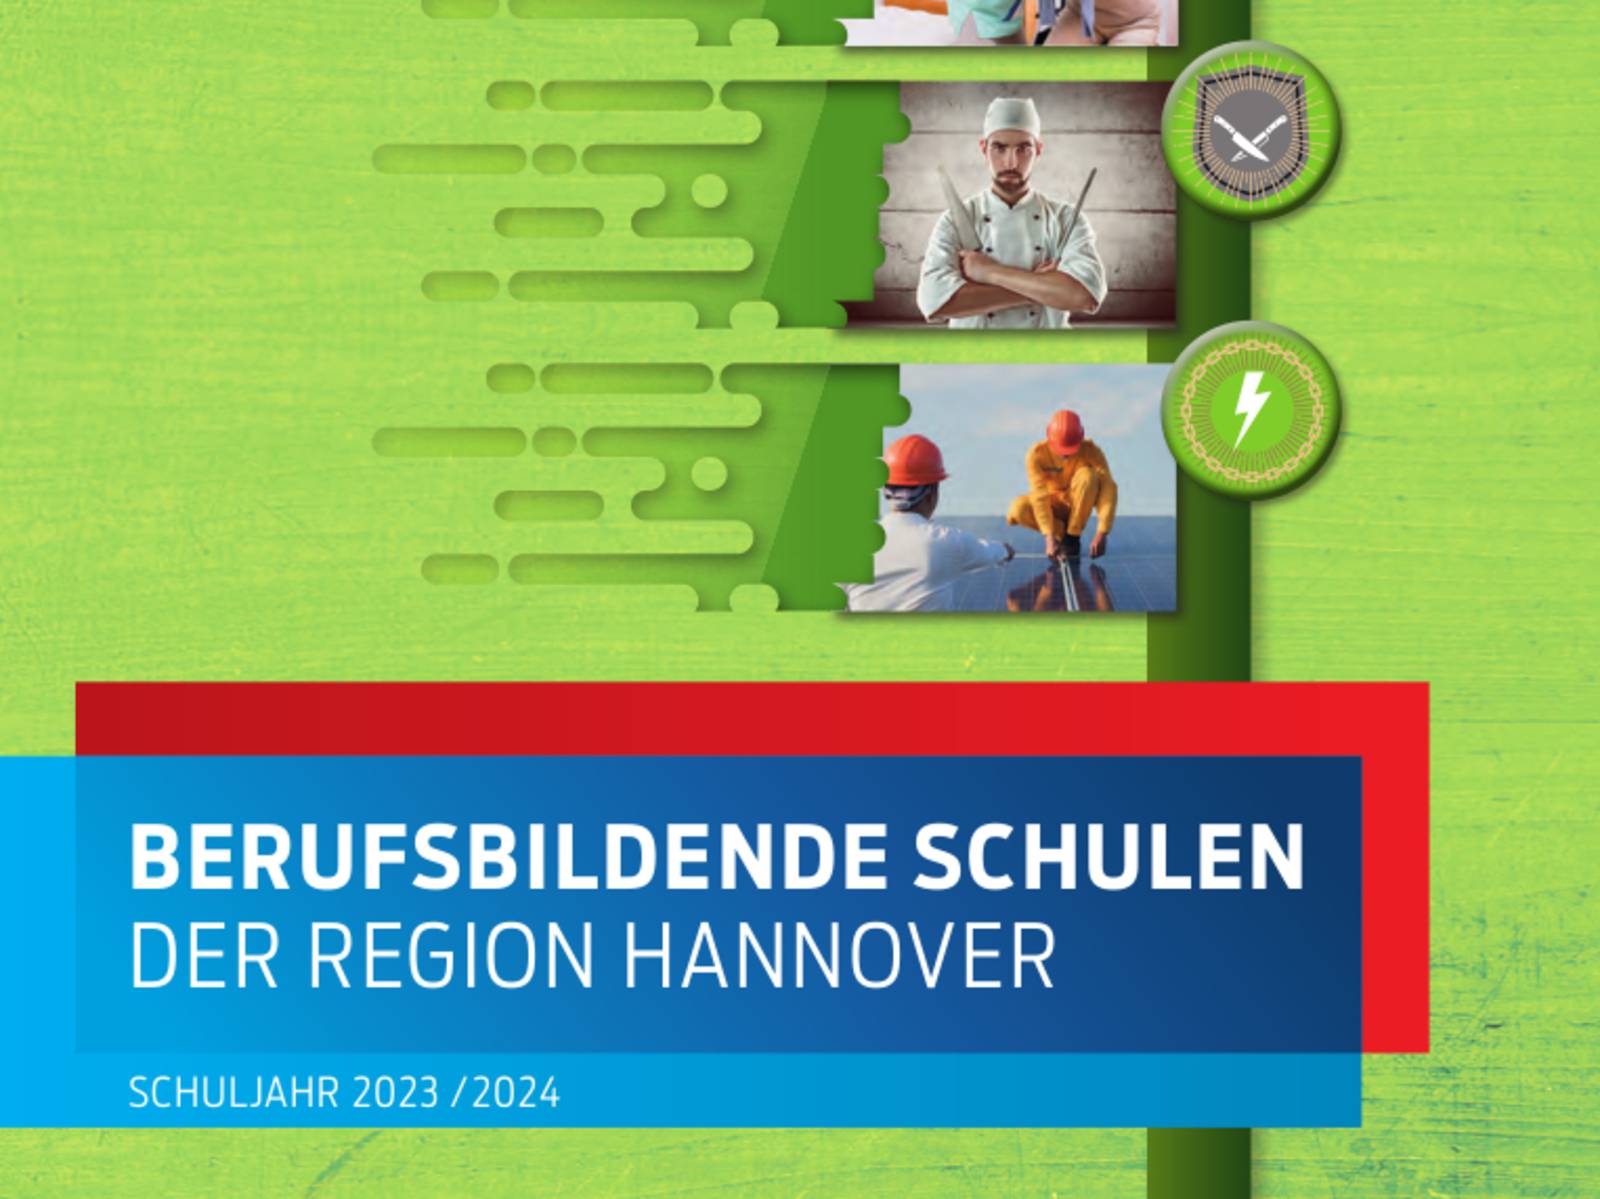 Schriftzug "Berufsbildende Schulen der Region Hannover Schuljahr 2023/2024".